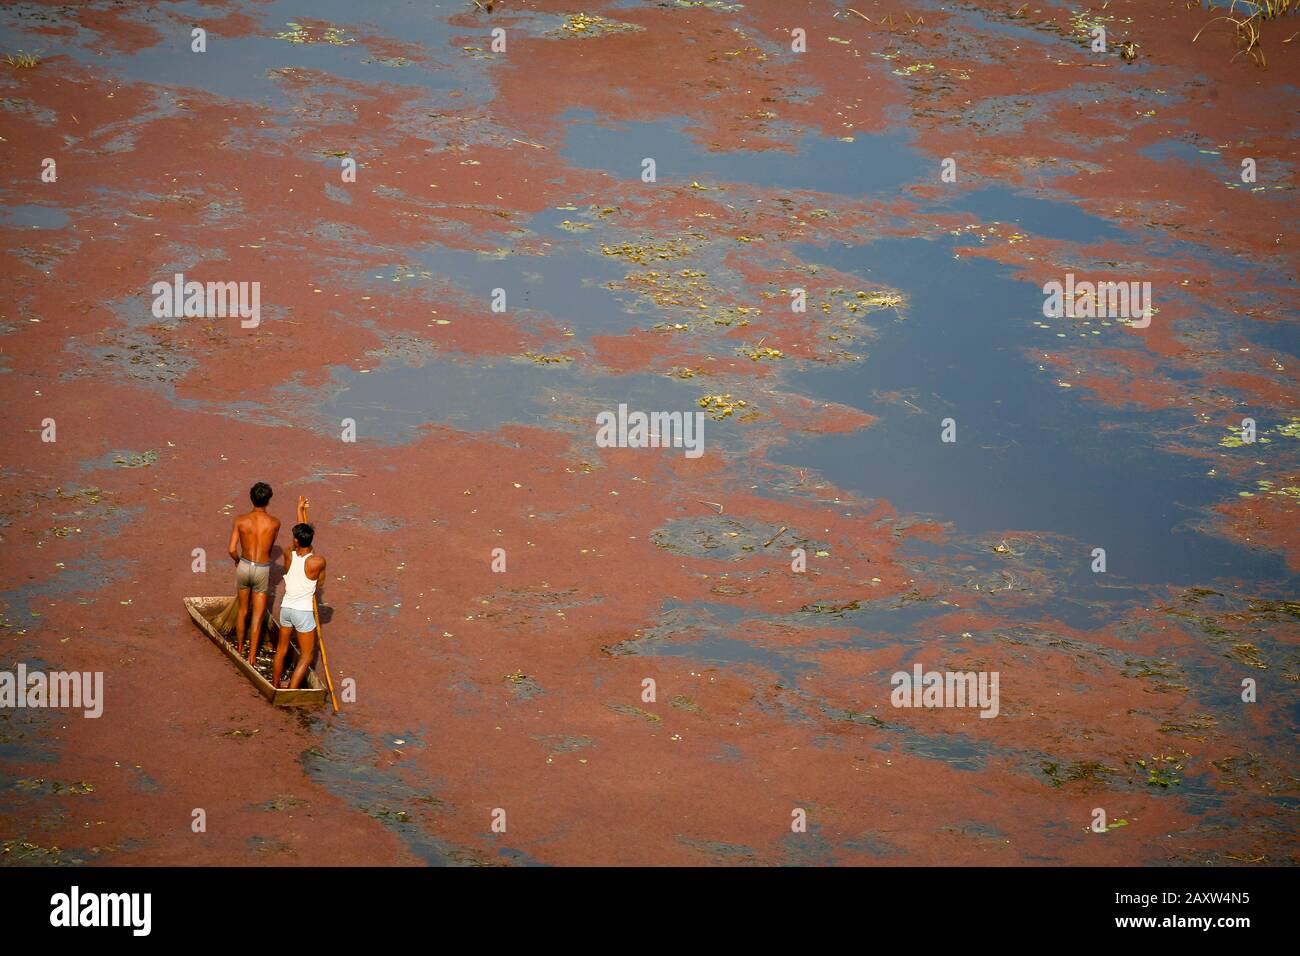 pequeño barco y hombres en el lago cubierto de algas rojas Foto de stock